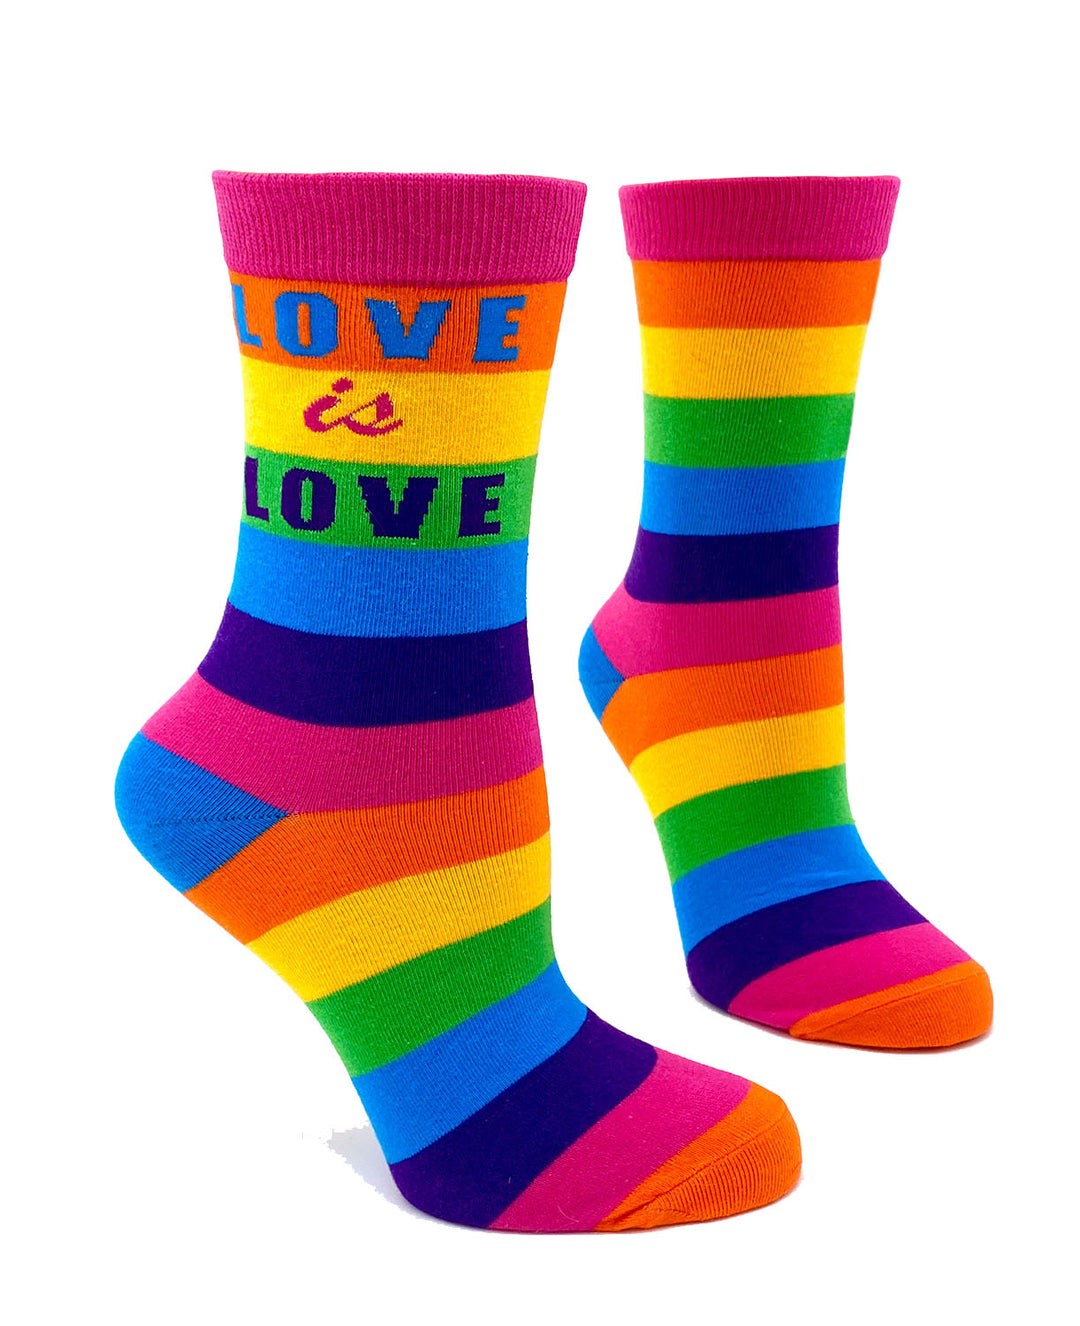 LOVE is LOVE Women's Crew Socks